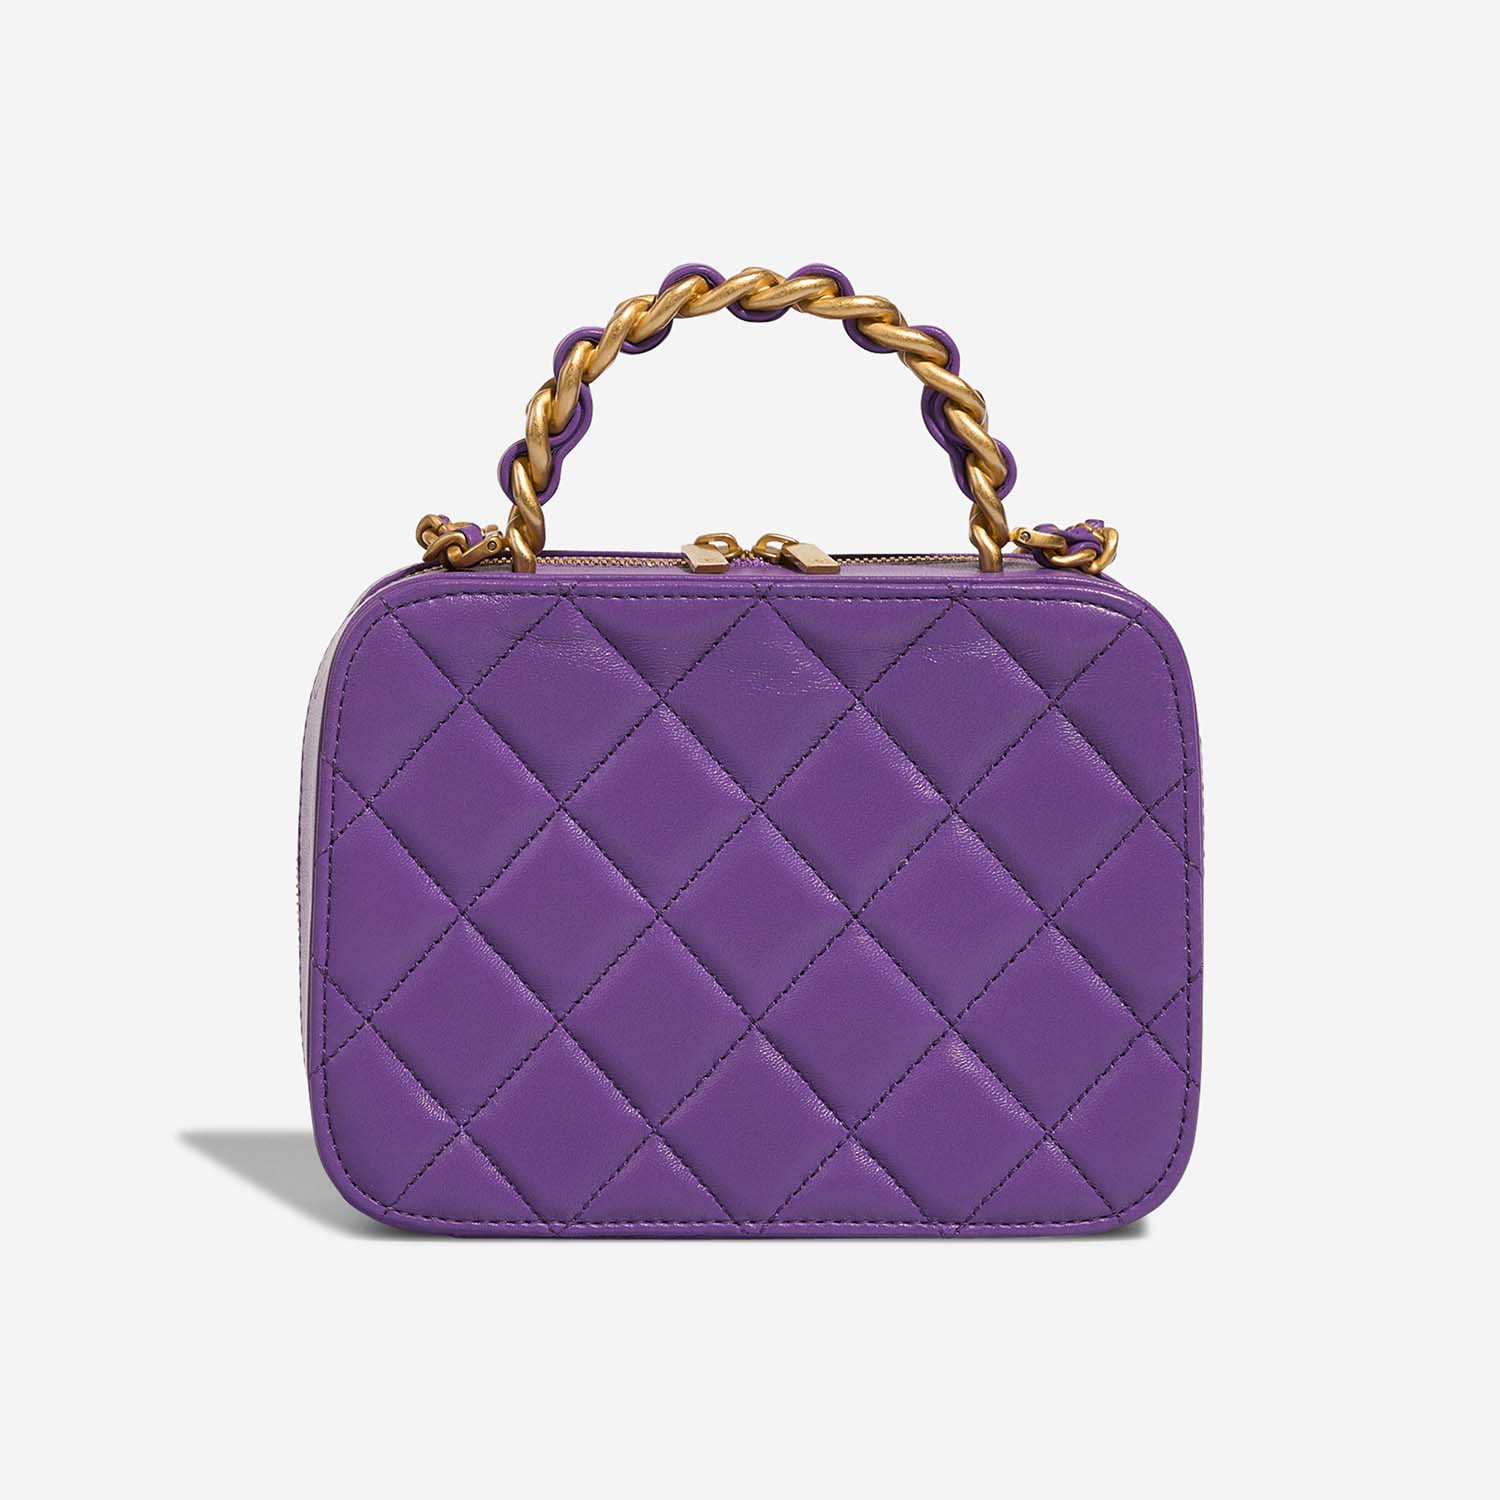 Chanel Vanity Small Violet Back | Verkaufen Sie Ihre Designer-Tasche auf Saclab.com